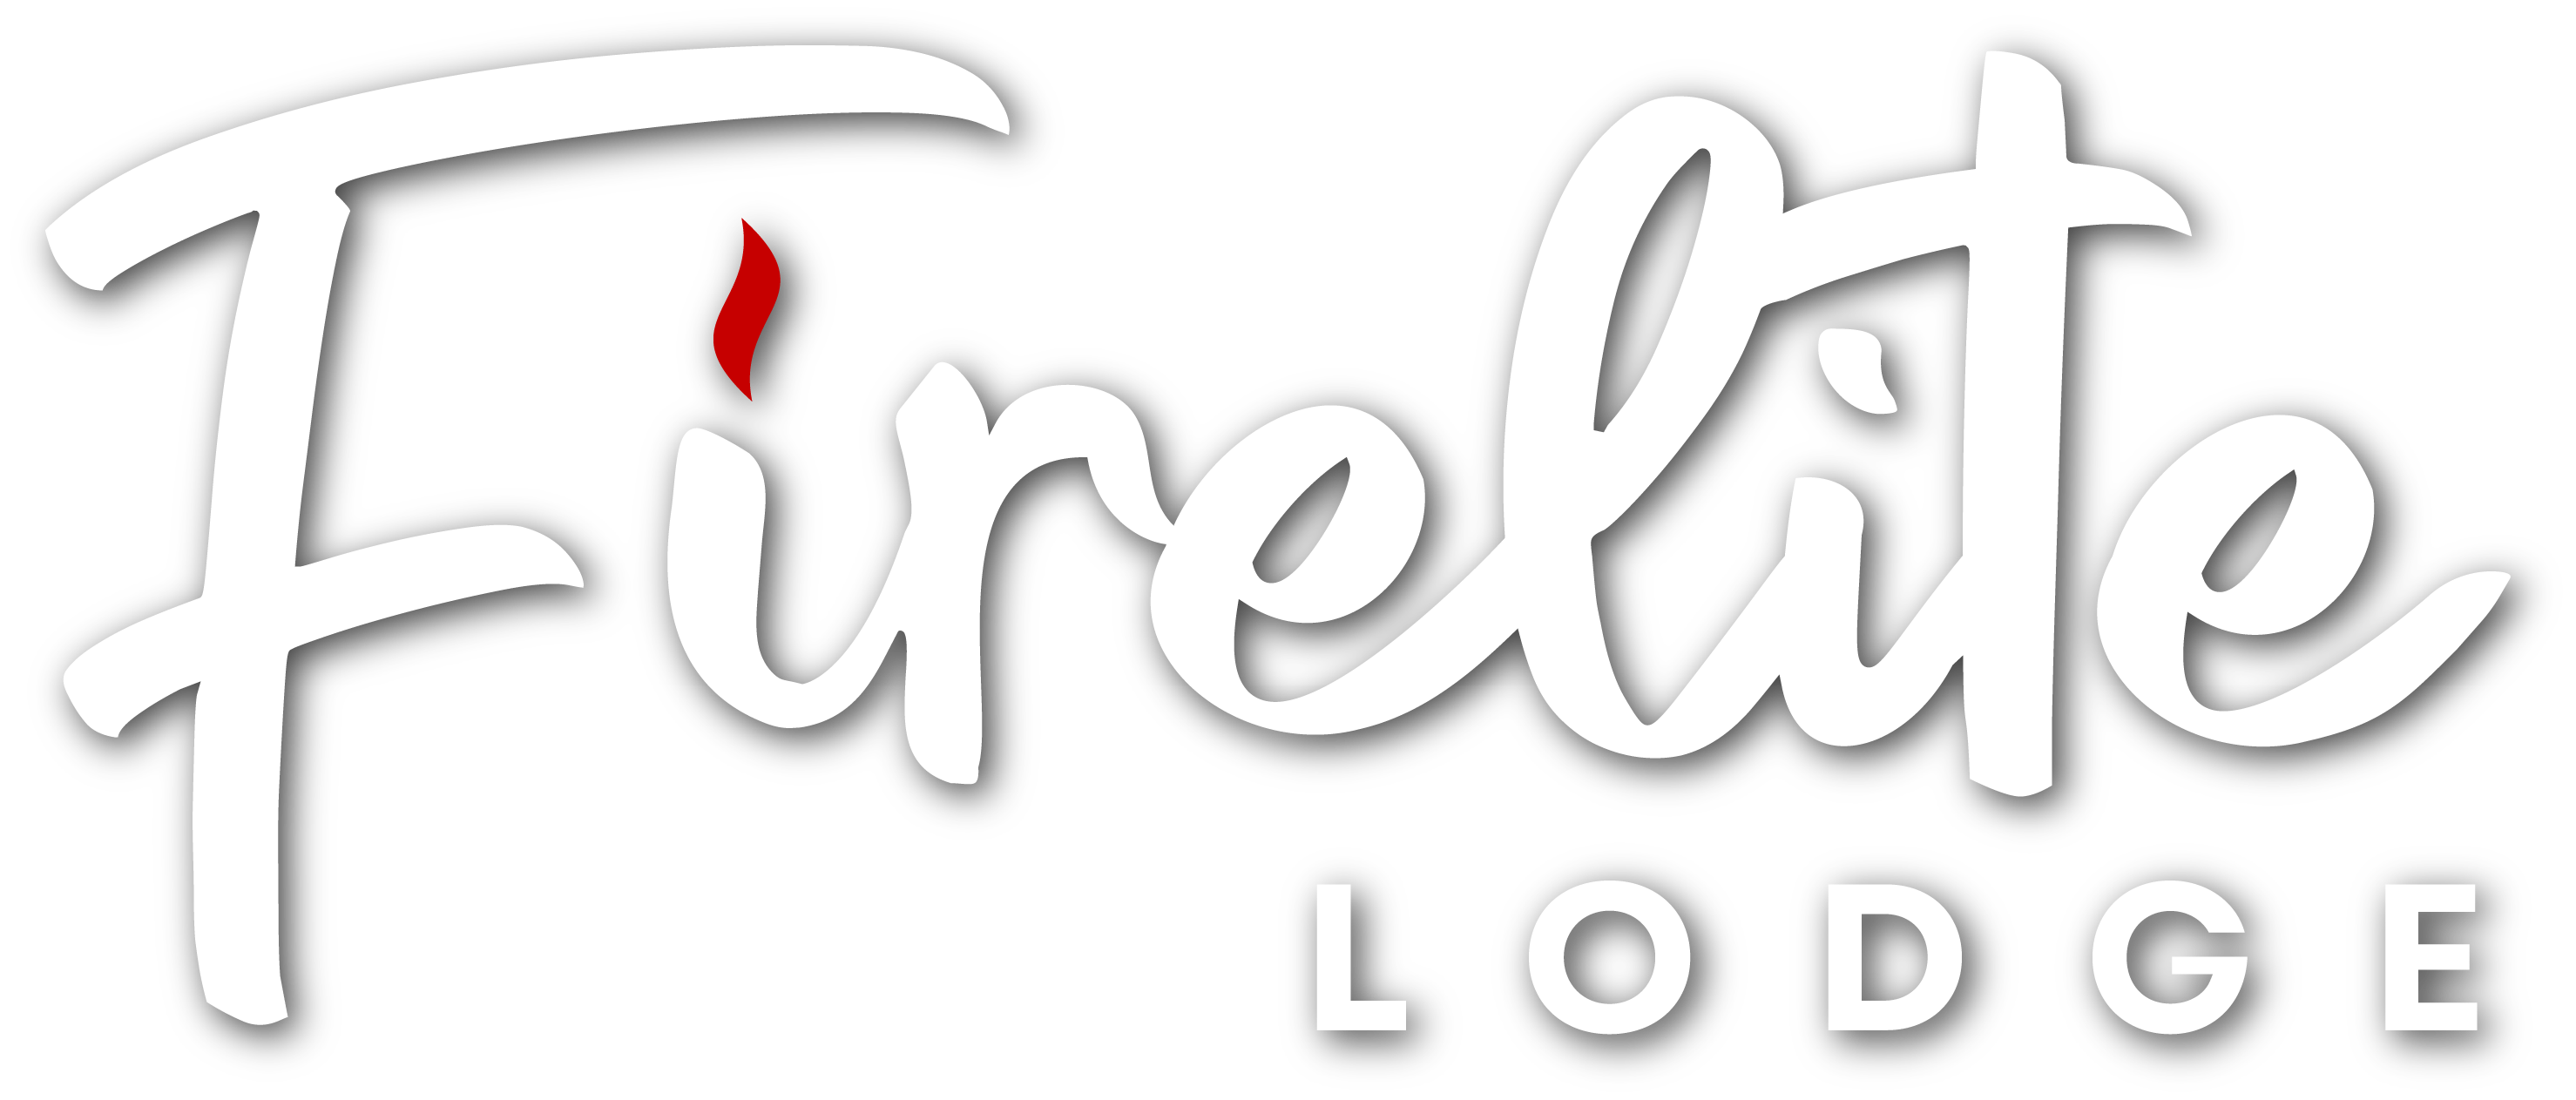 Firelite Lodge